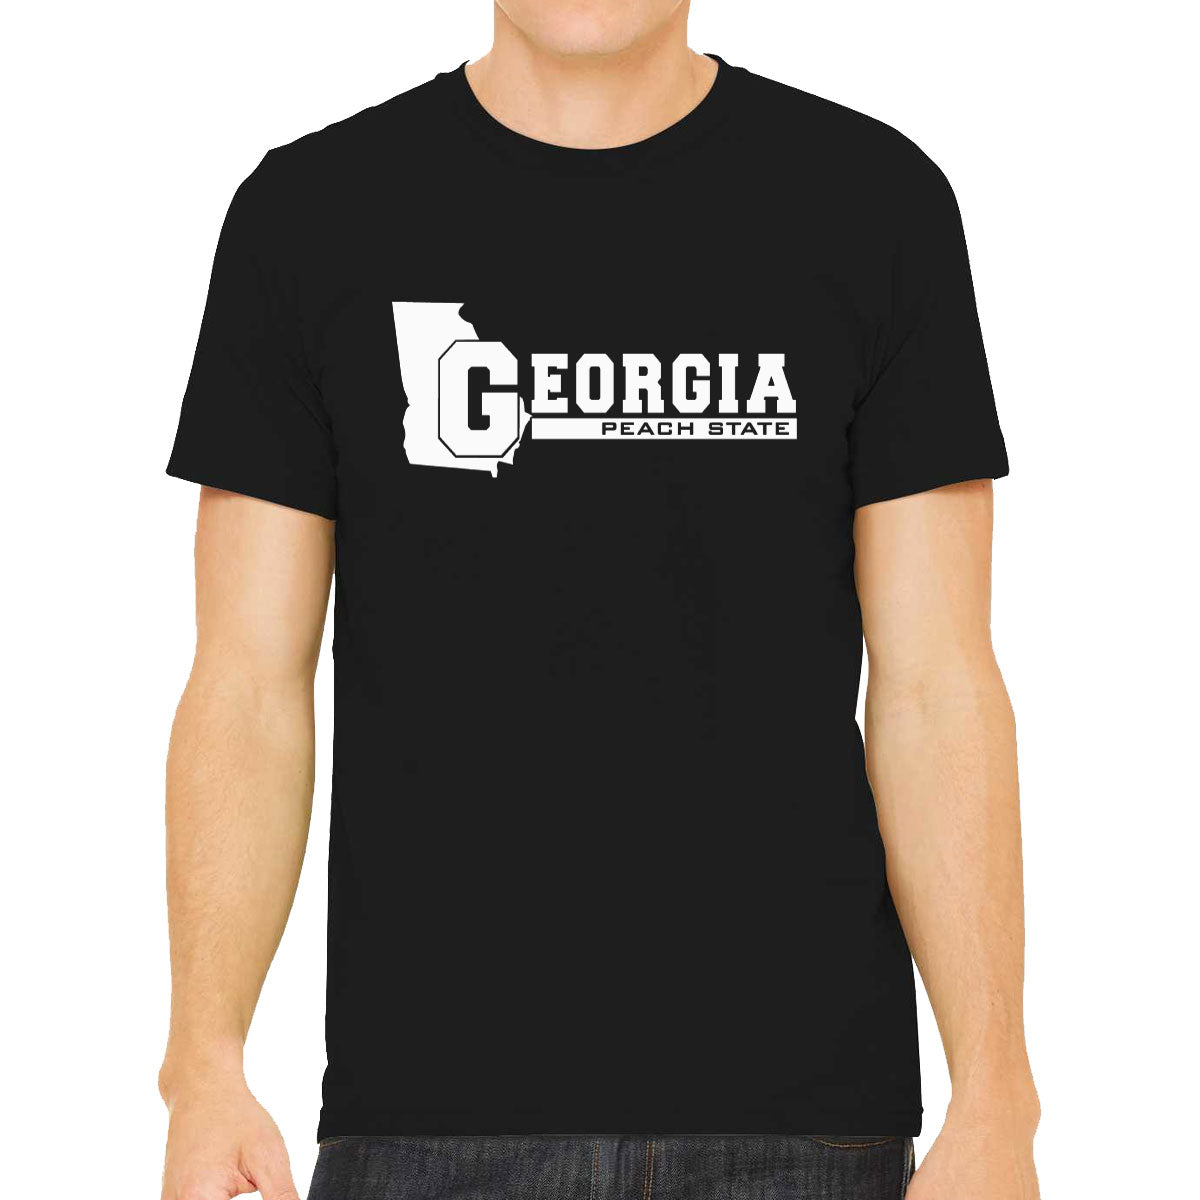 Georgia Peach State Men's T-shirt